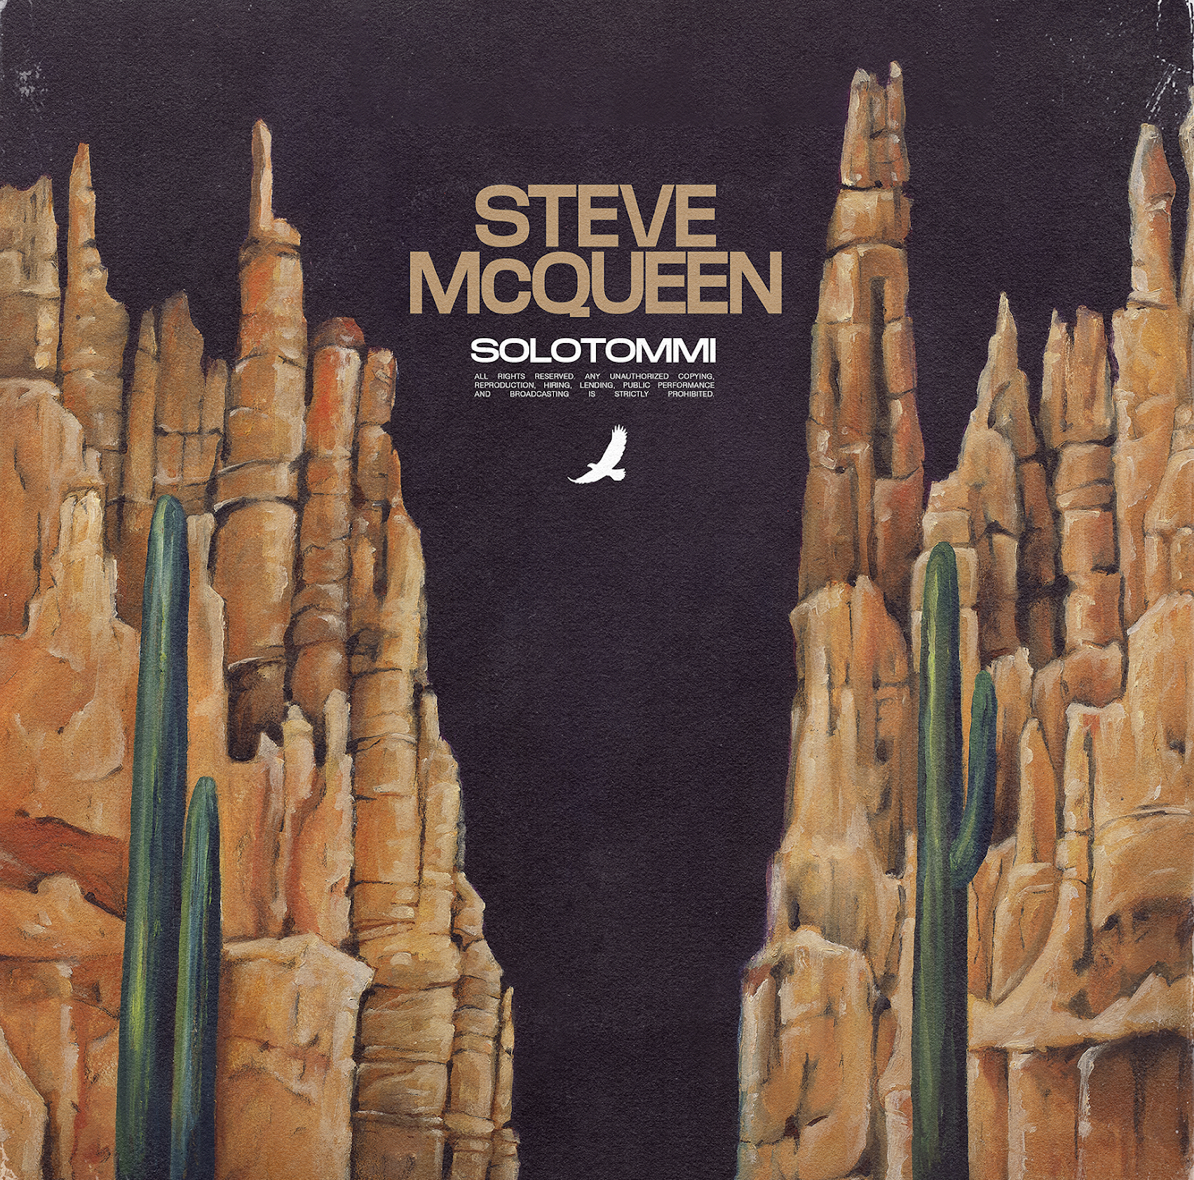 Solotommi presenta il nuovo singolo “Steve McQUEEN”